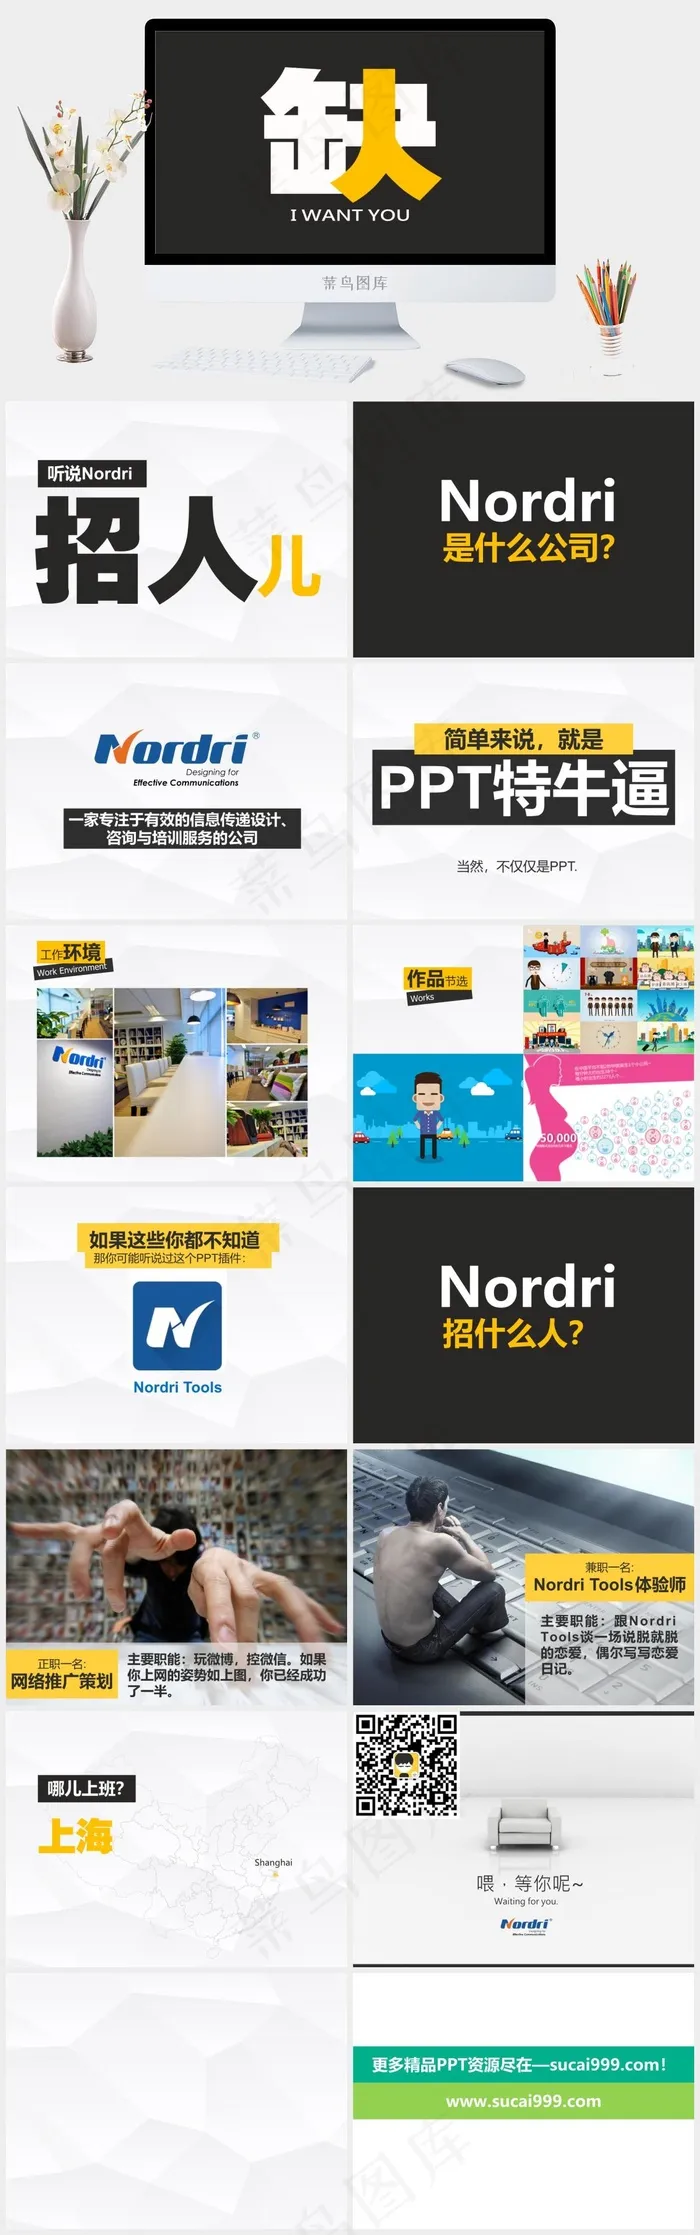 简单可读性强Nordri招聘广告ppt灰色营销简洁PPT模板